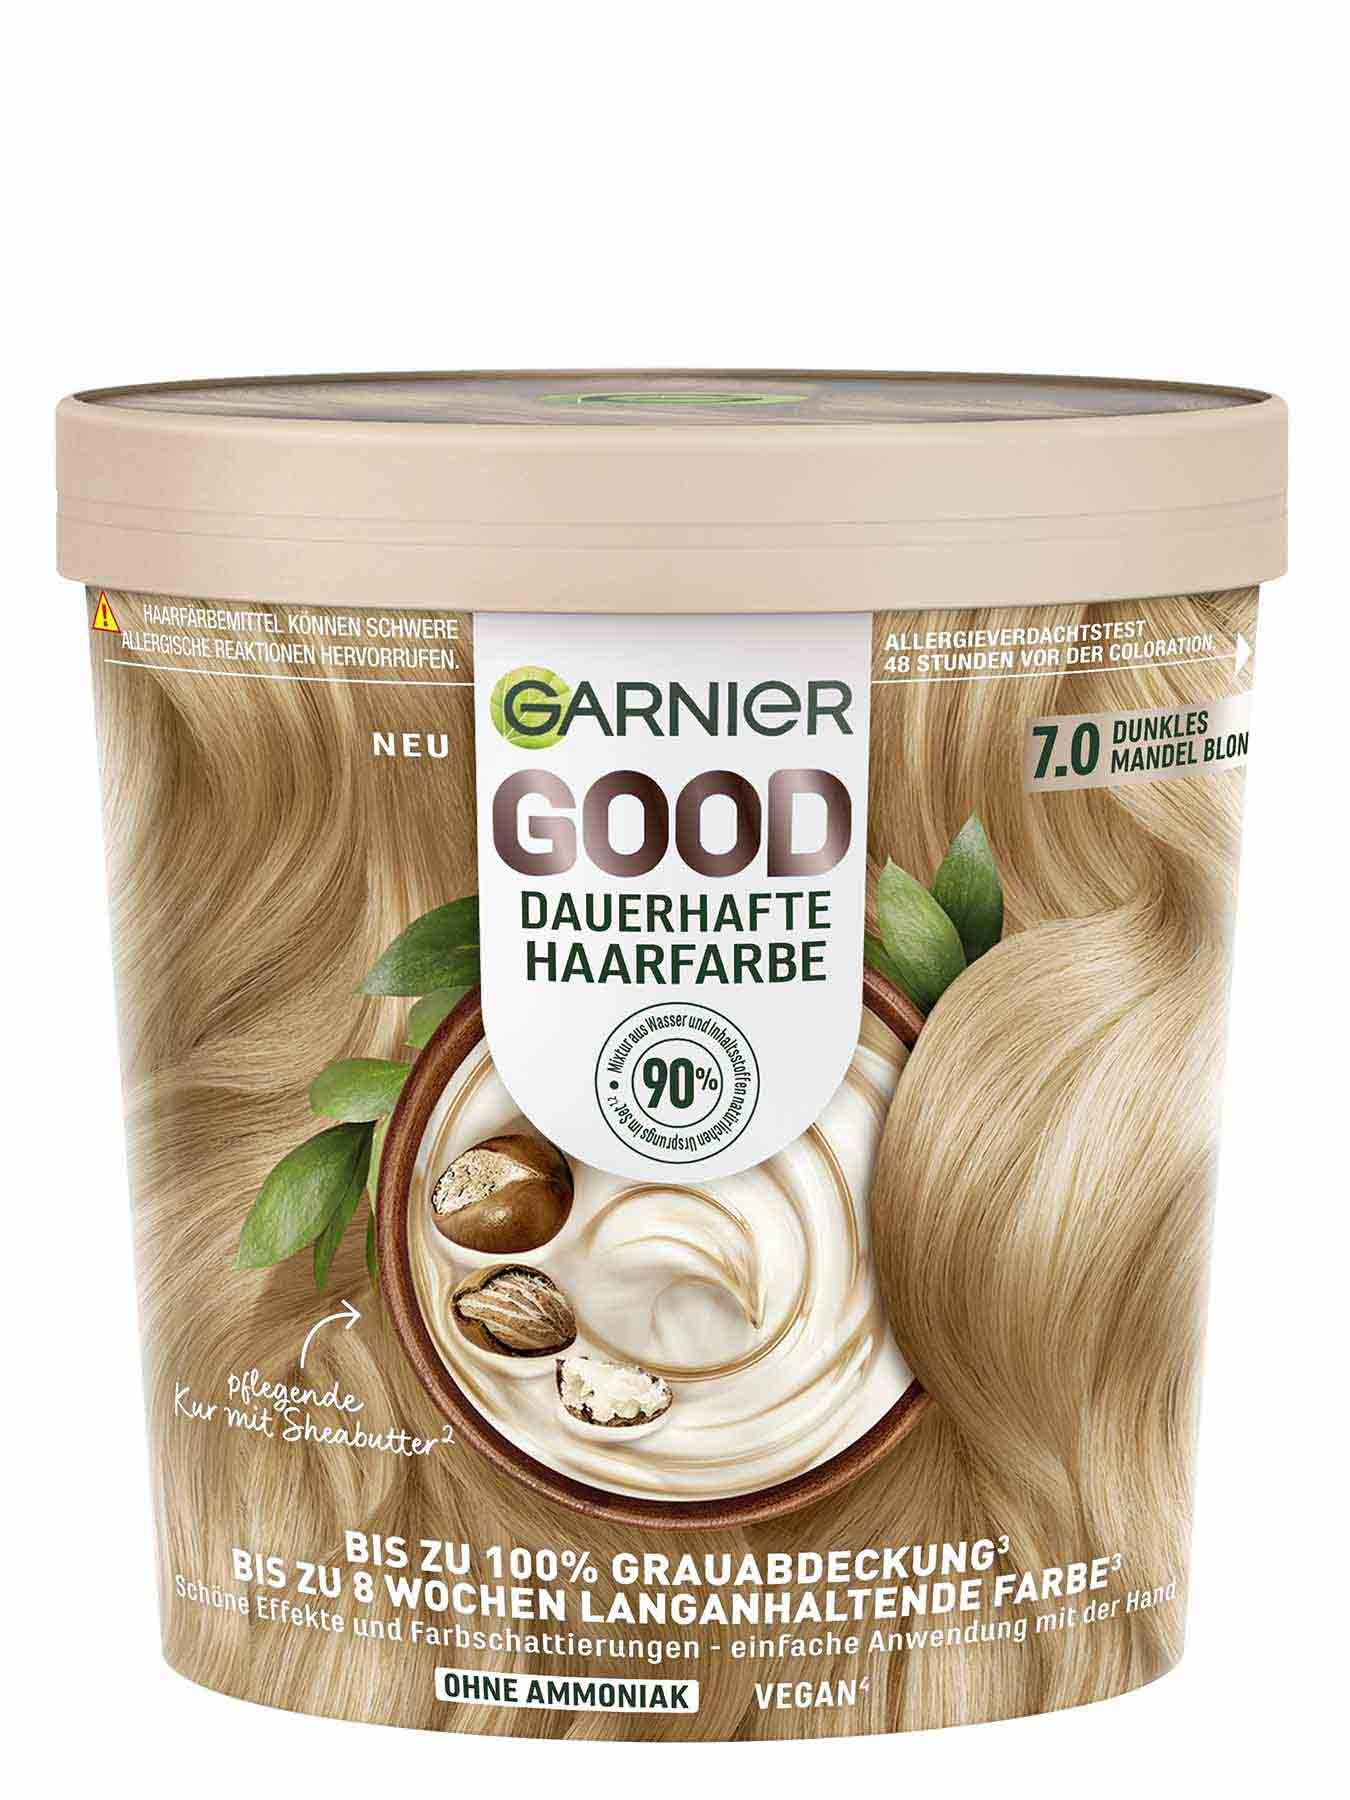 GOOD Dauerhafte Haarfarbe 7.0 Dunkles Mandel Blond Produktbild